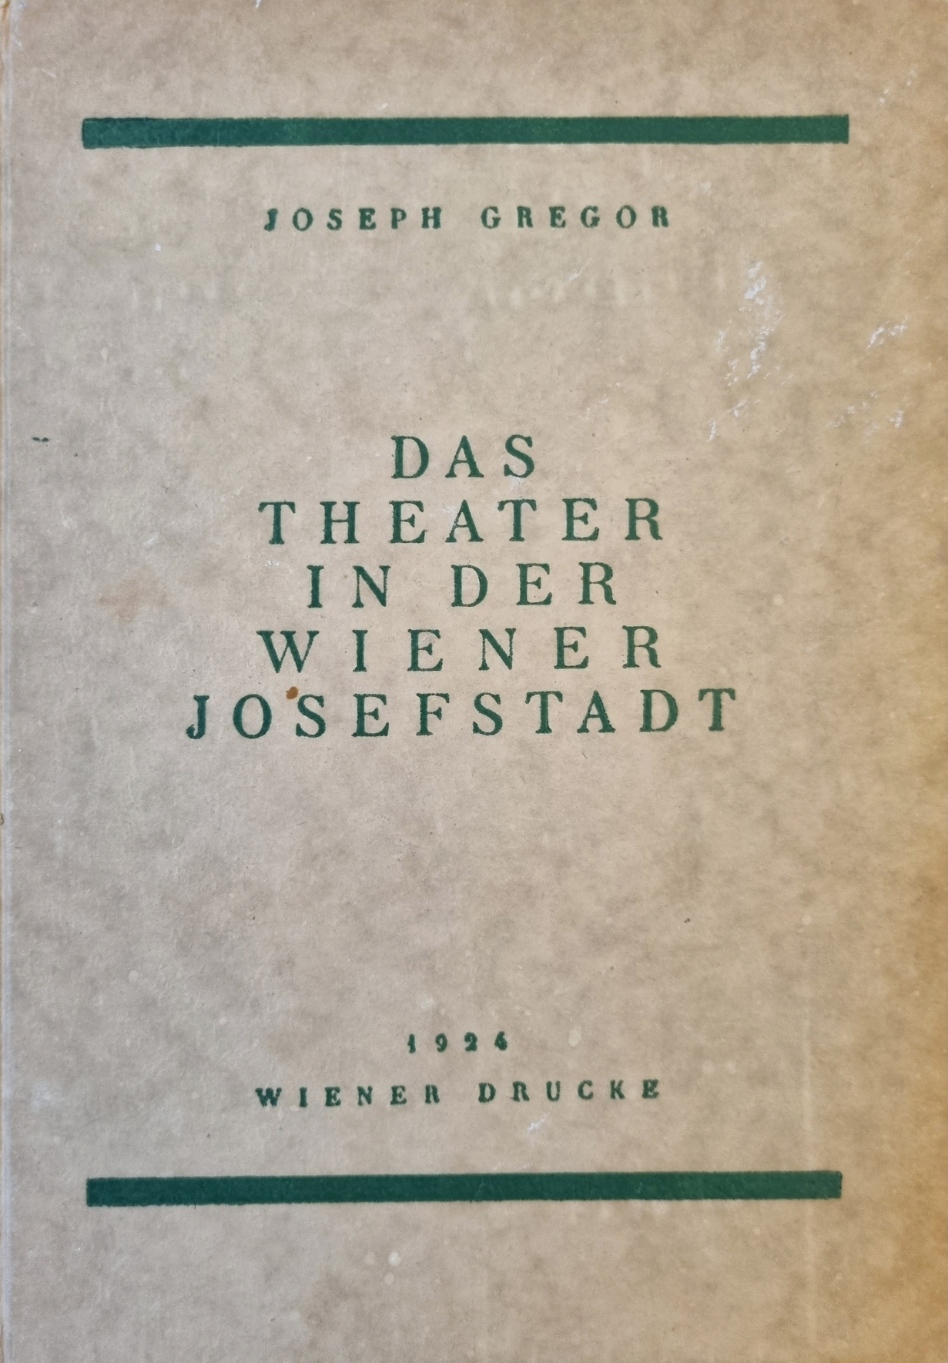 Das Theater in der Wiener Josefstadt.jpg